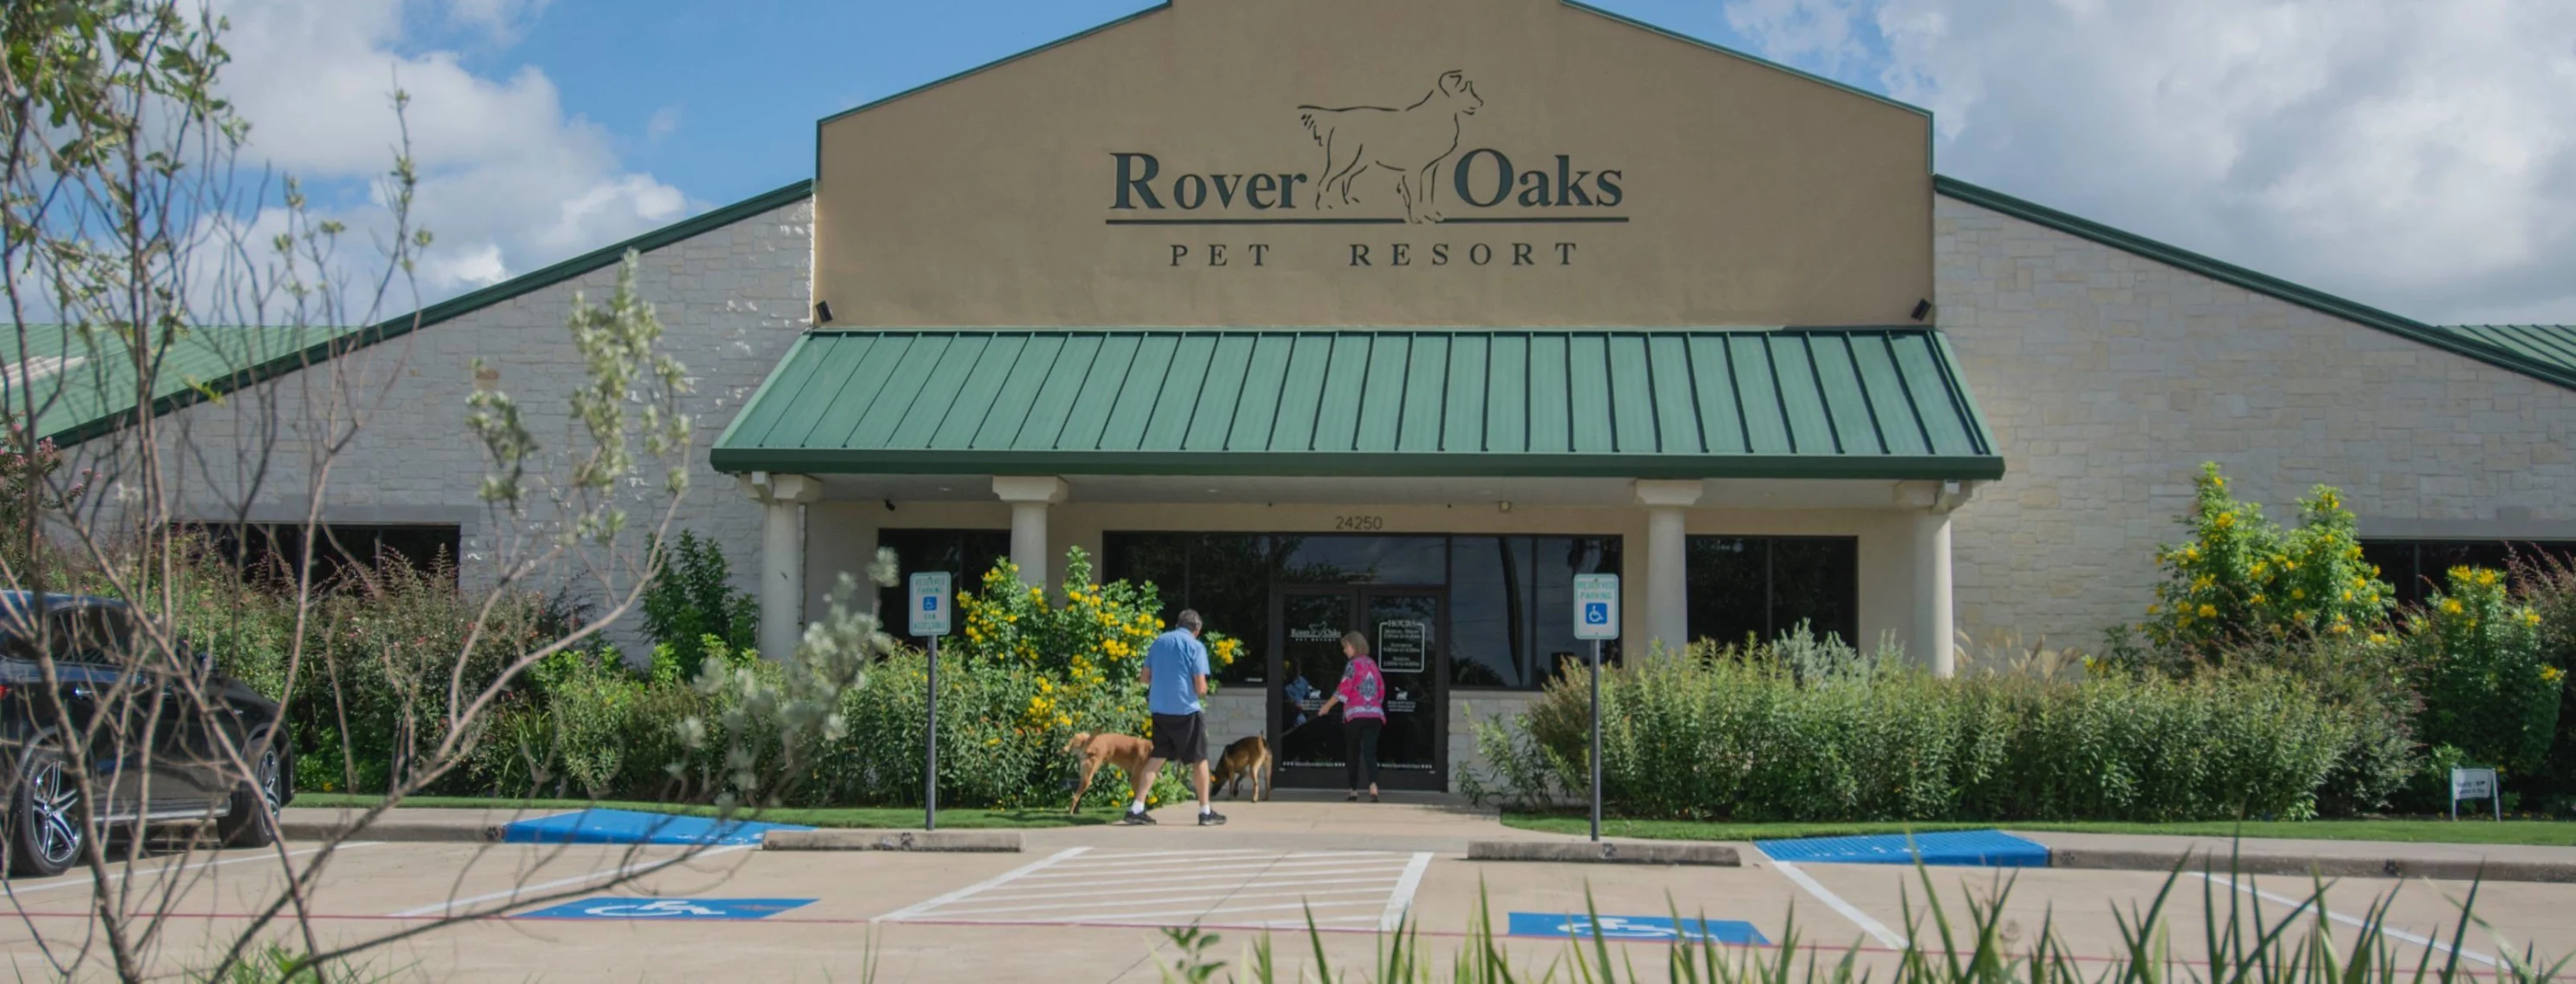 Exterior of Rover Oaks Pet Resort in Katy